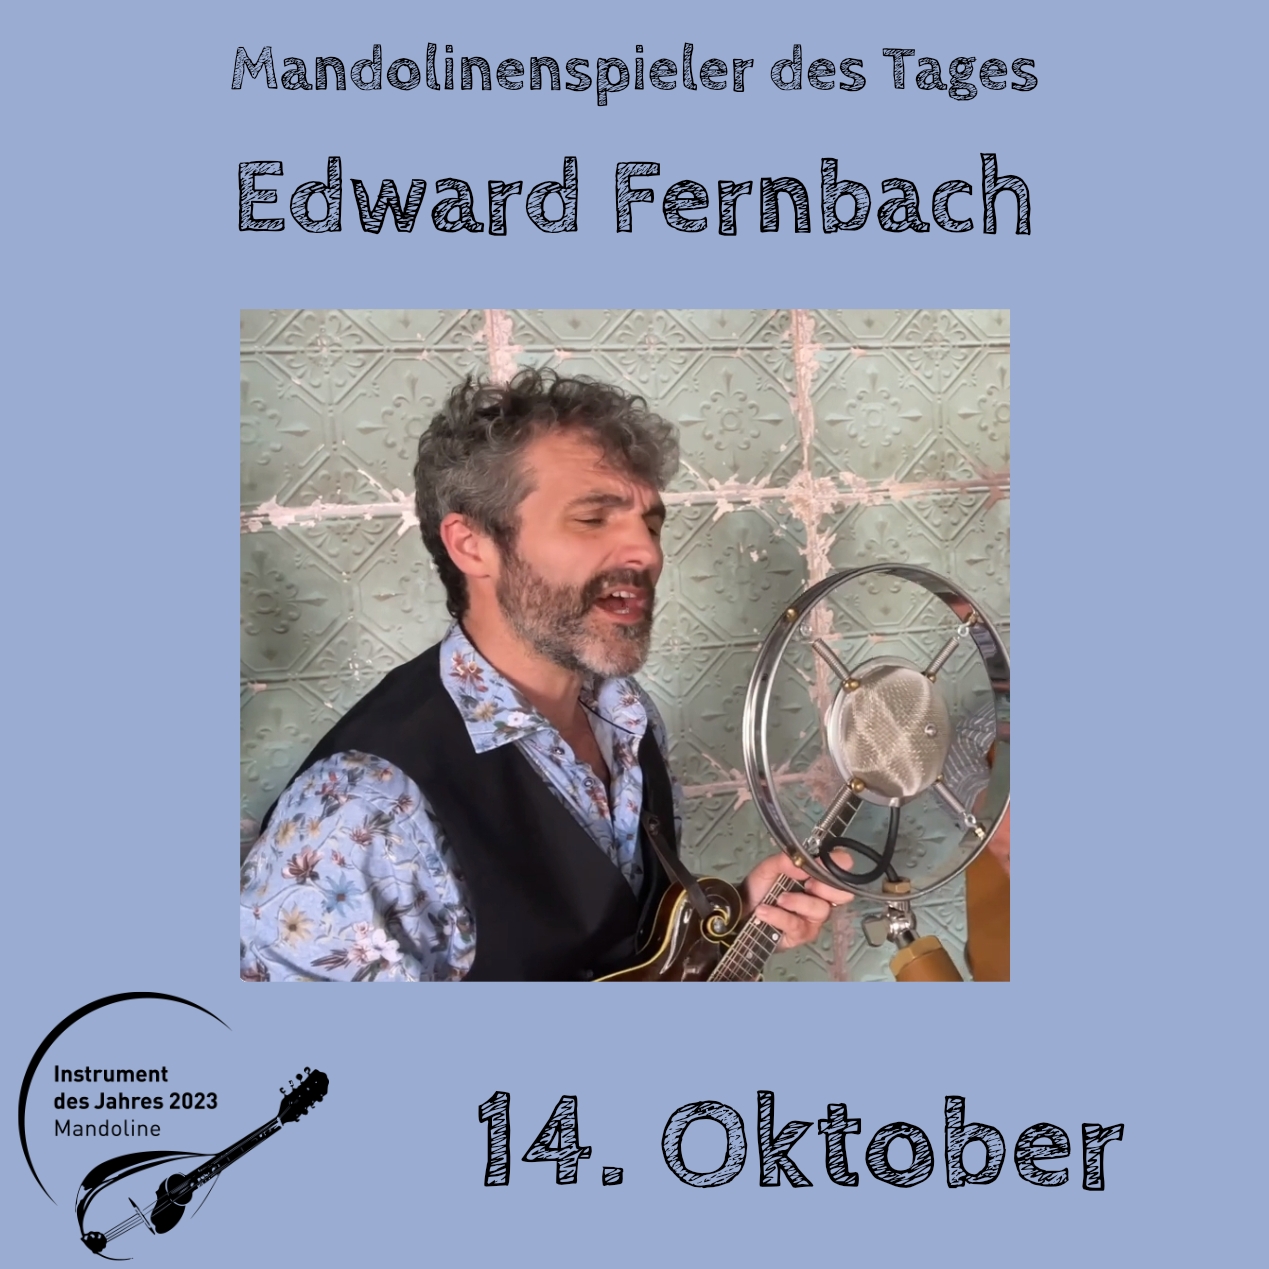 14. Oktober - Edward Fernbach Instrument des Jahres 2023 Mandolinenspieler Mandolinenspielerin des Tages